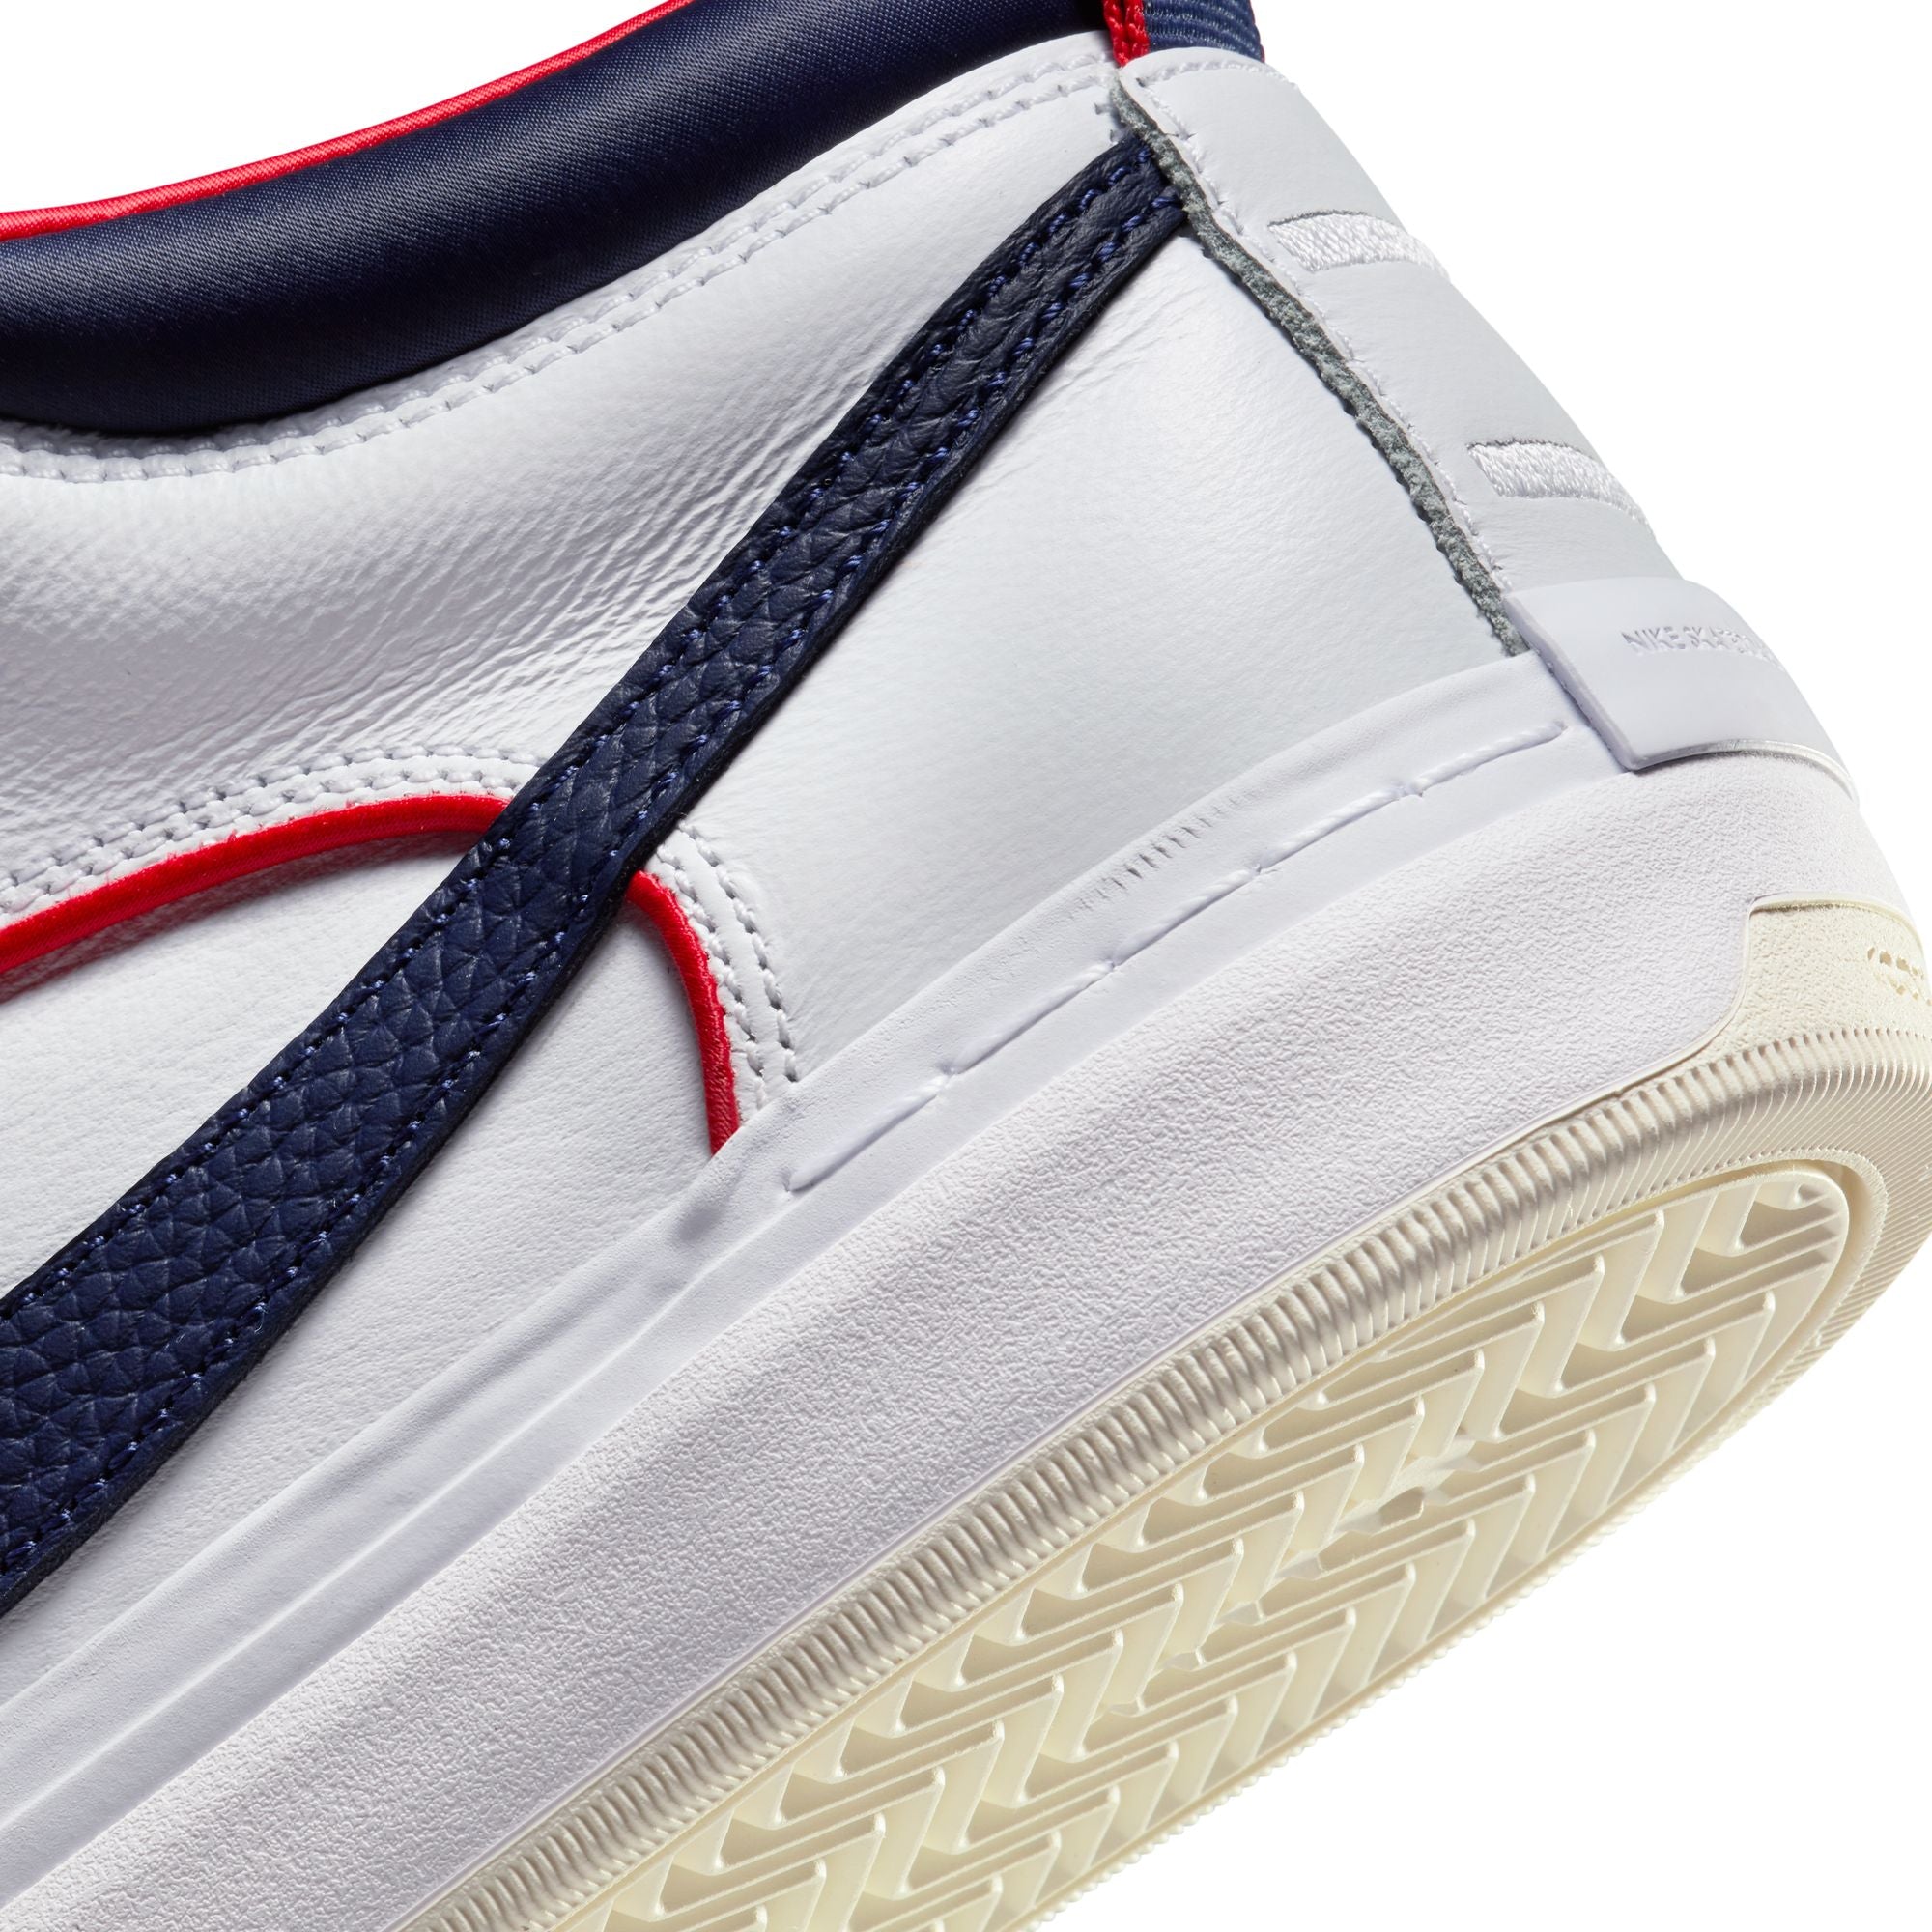 White/Navy Leo Baker Premium React Nike SB Skate Shoe Detail